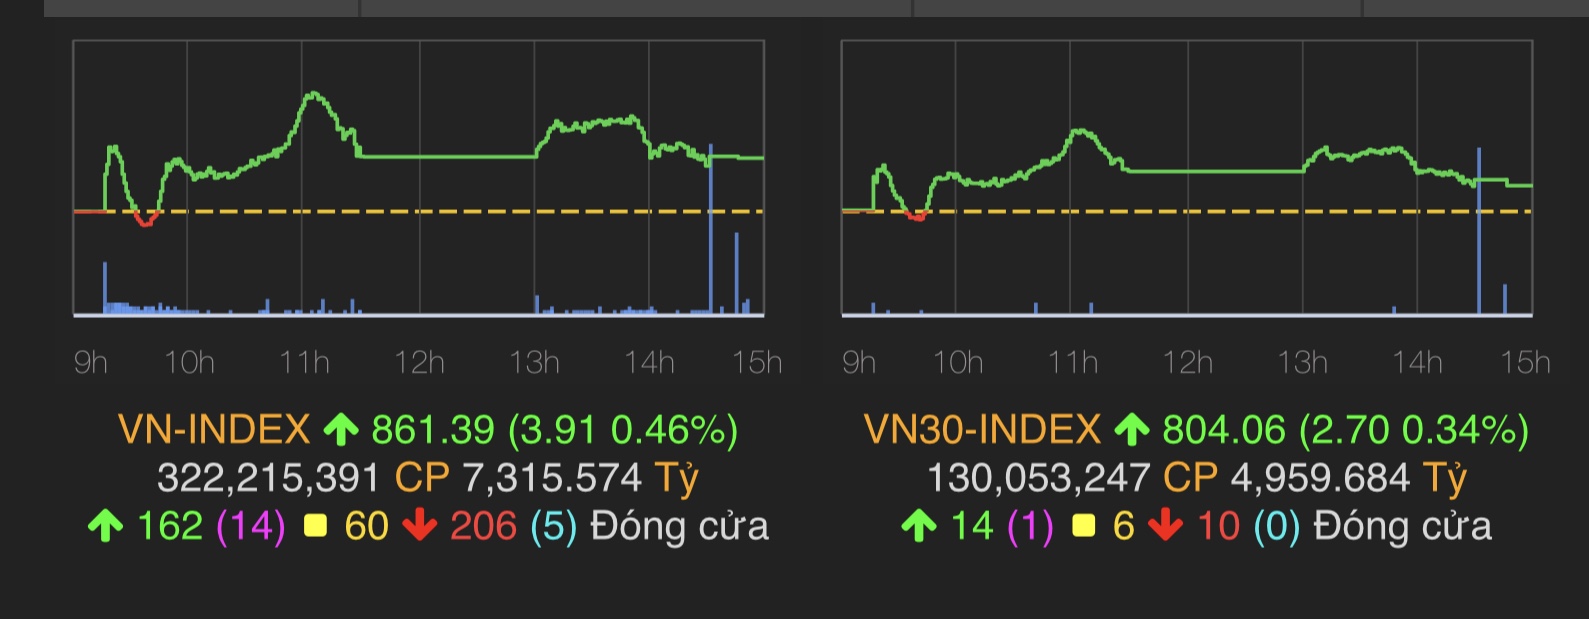 VN-Index tăng 3,9 điểm (0,46%) lên 861,39 điểm.